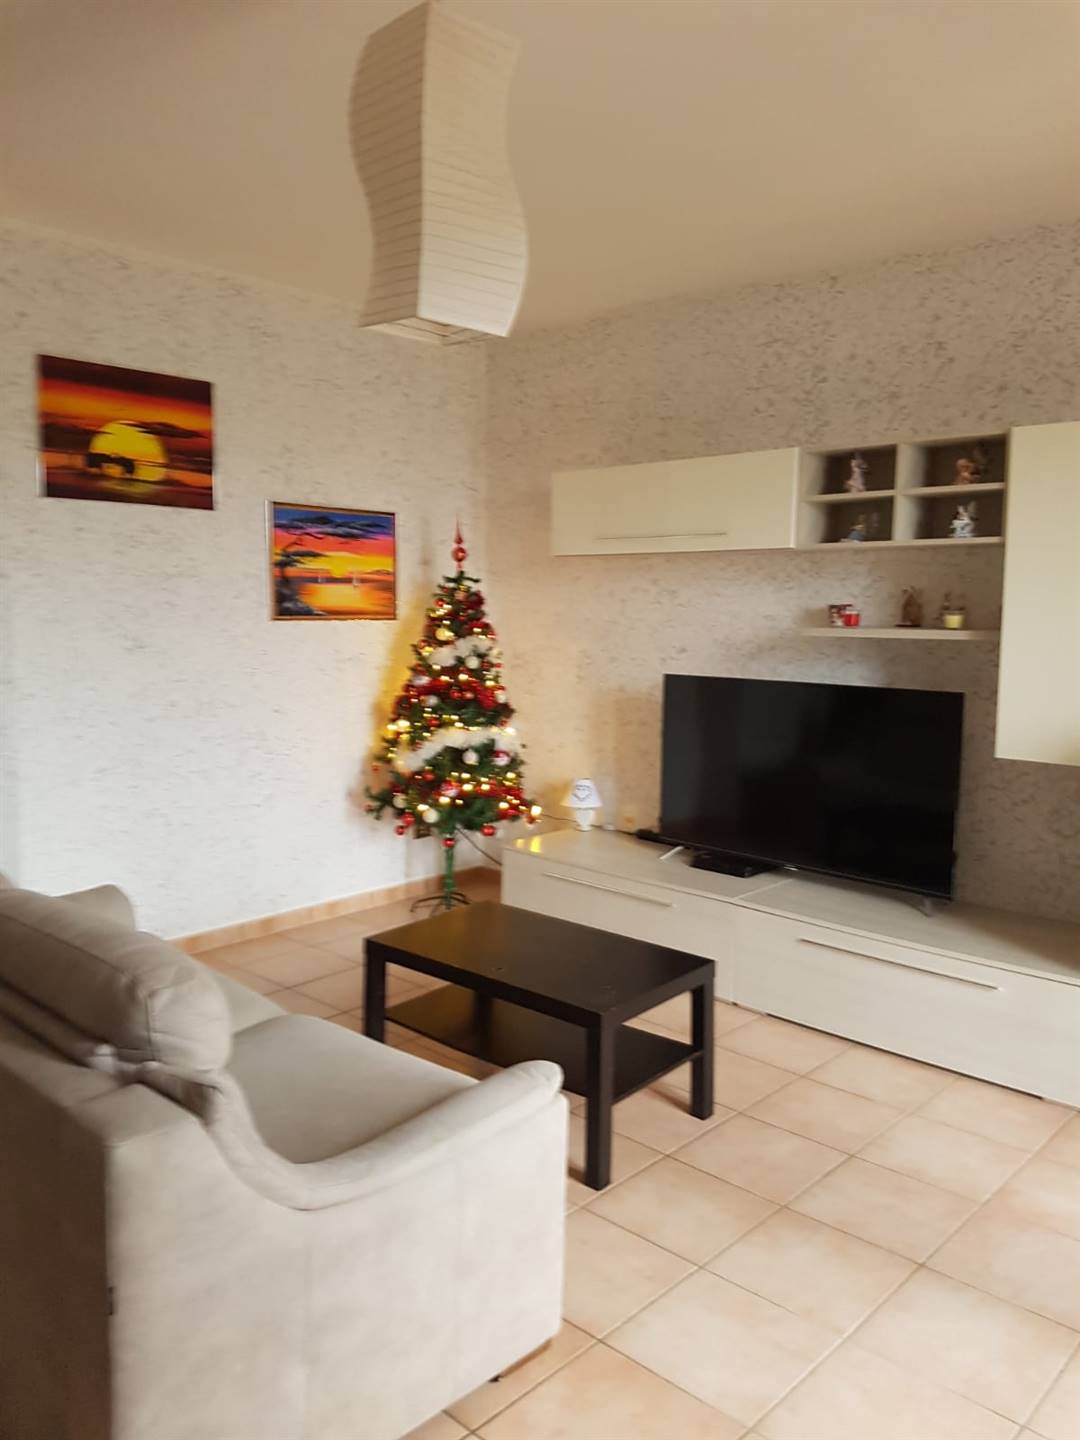 Appartamento in vendita a Tromello, 3 locali, prezzo € 90.000 | CambioCasa.it